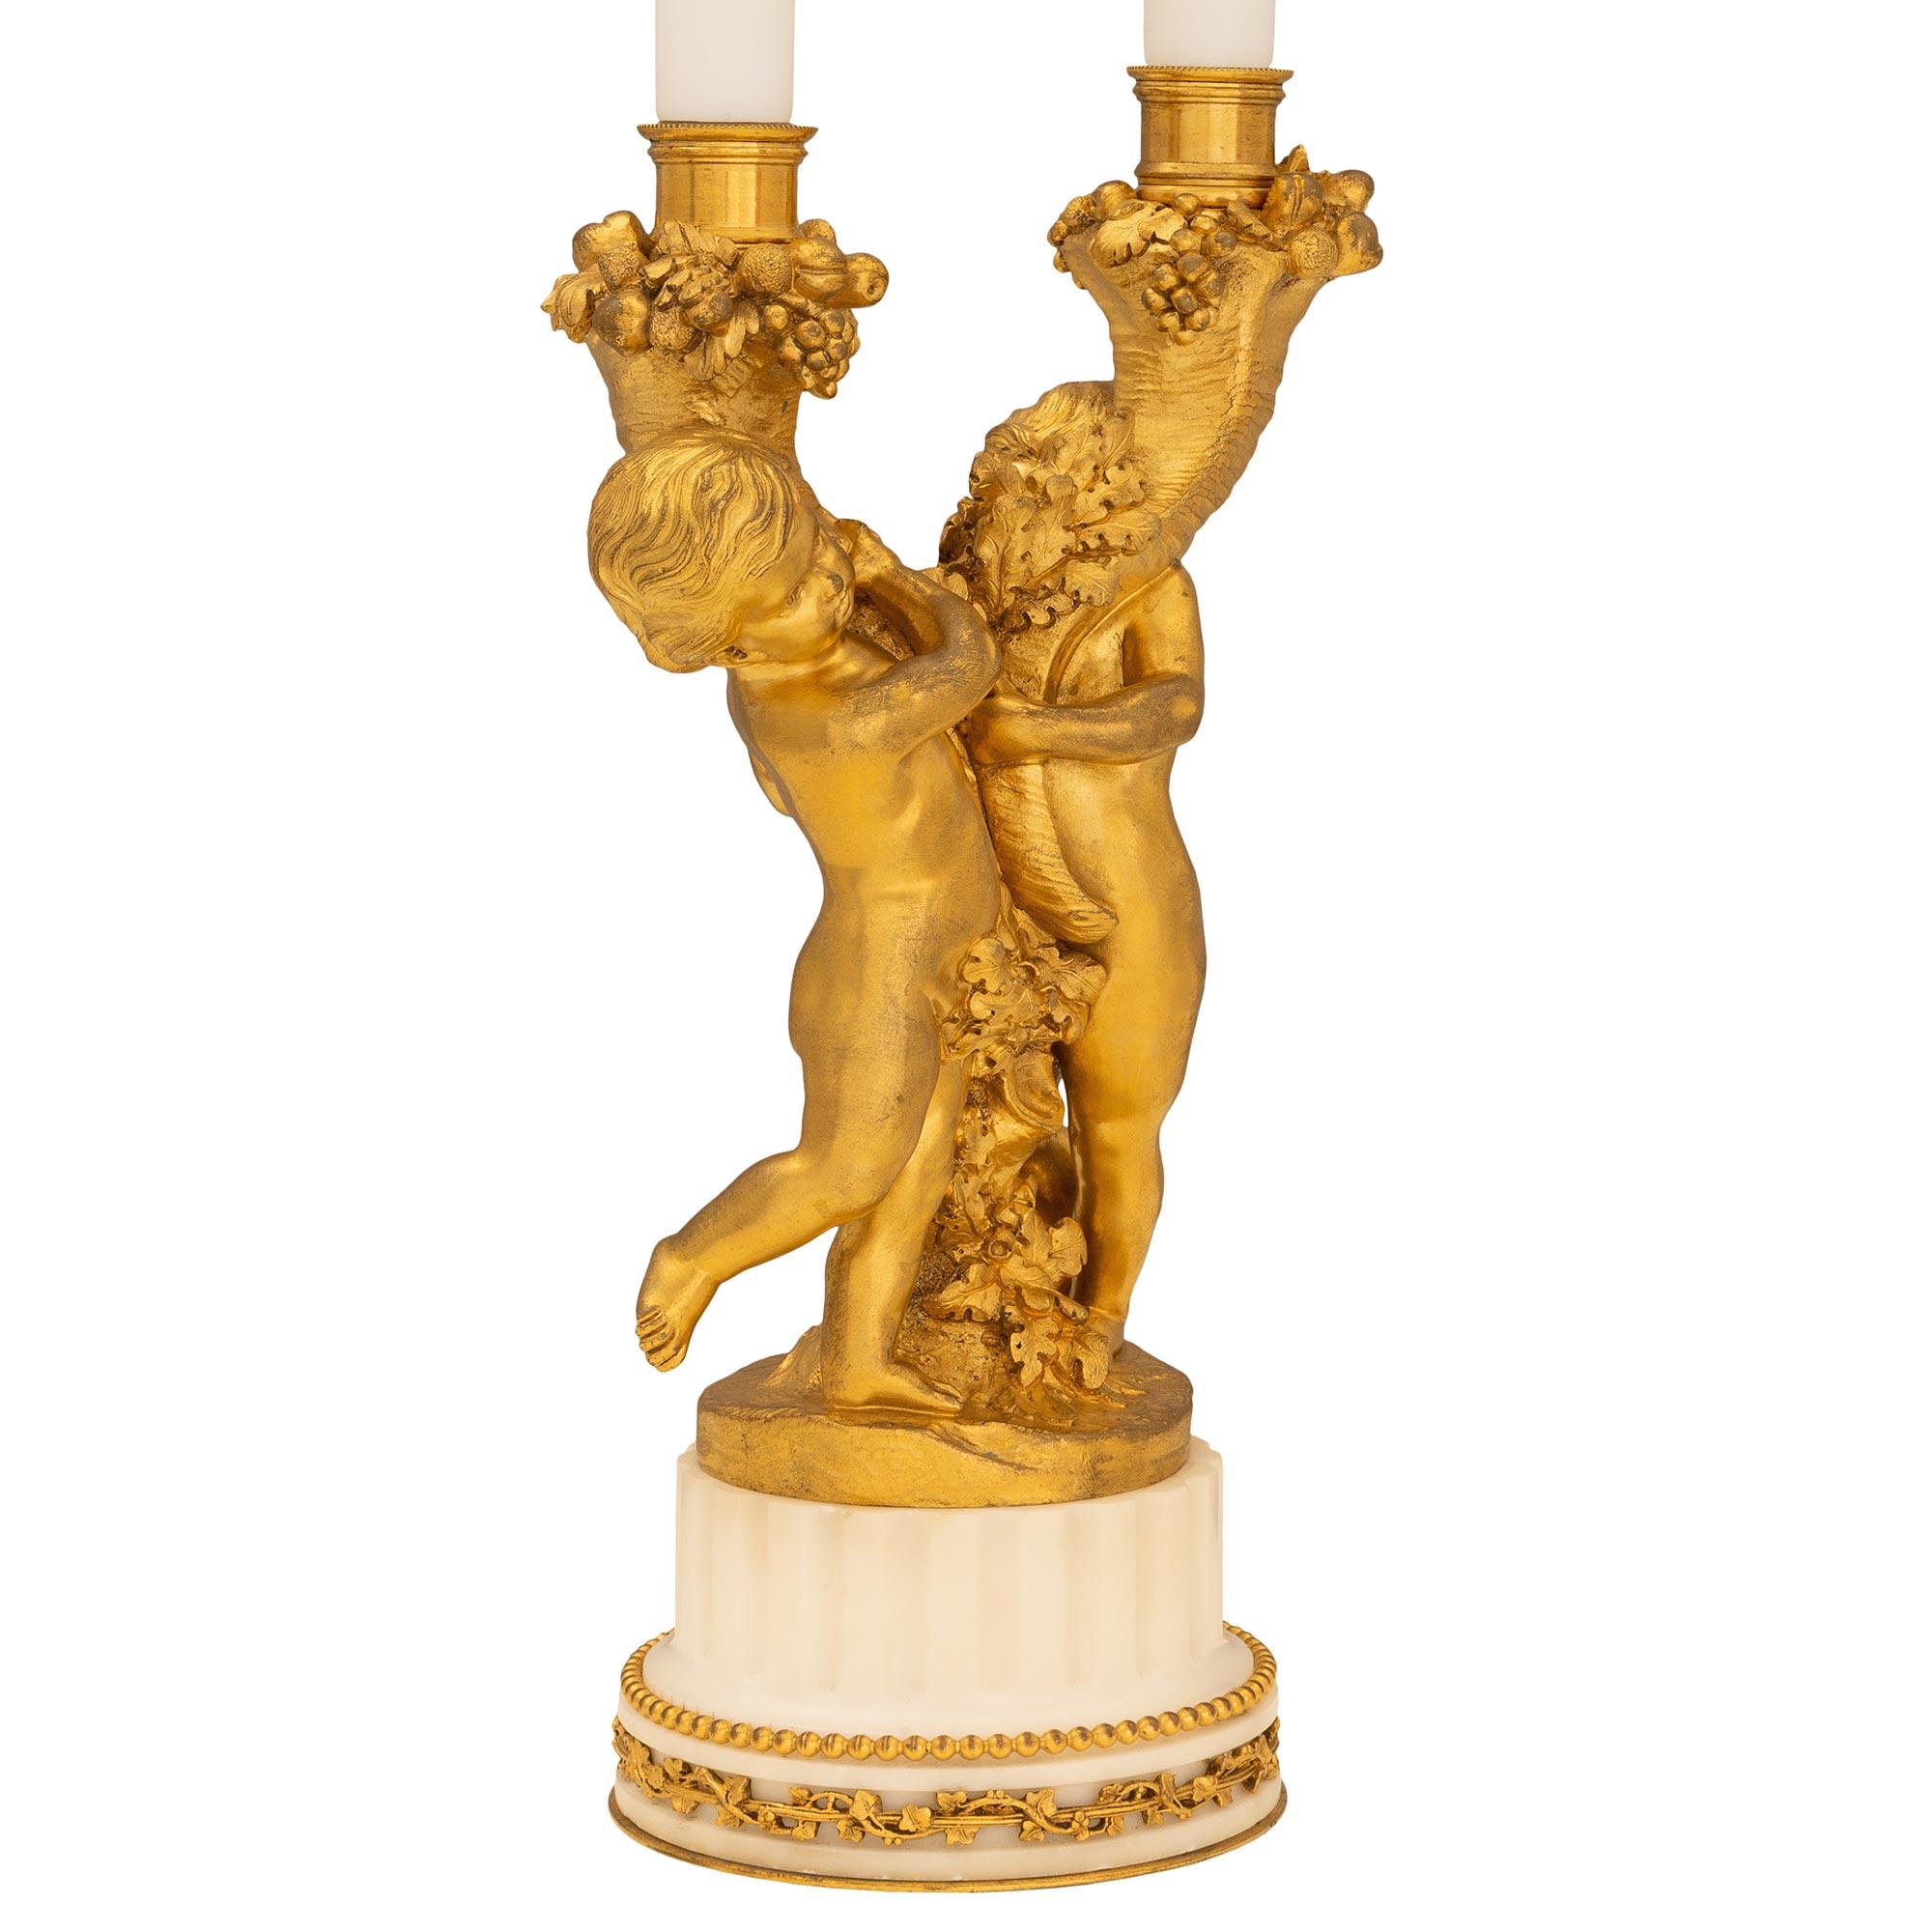 Une très belle paire de lampes candélabres françaises du 19ème siècle, de style Louis XVI, en bronze doré et en marbre blanc de Carrare. Chaque lampe repose sur une base circulaire cannelée décorée d'une guirlande feuillagée en bronze doré et d'une